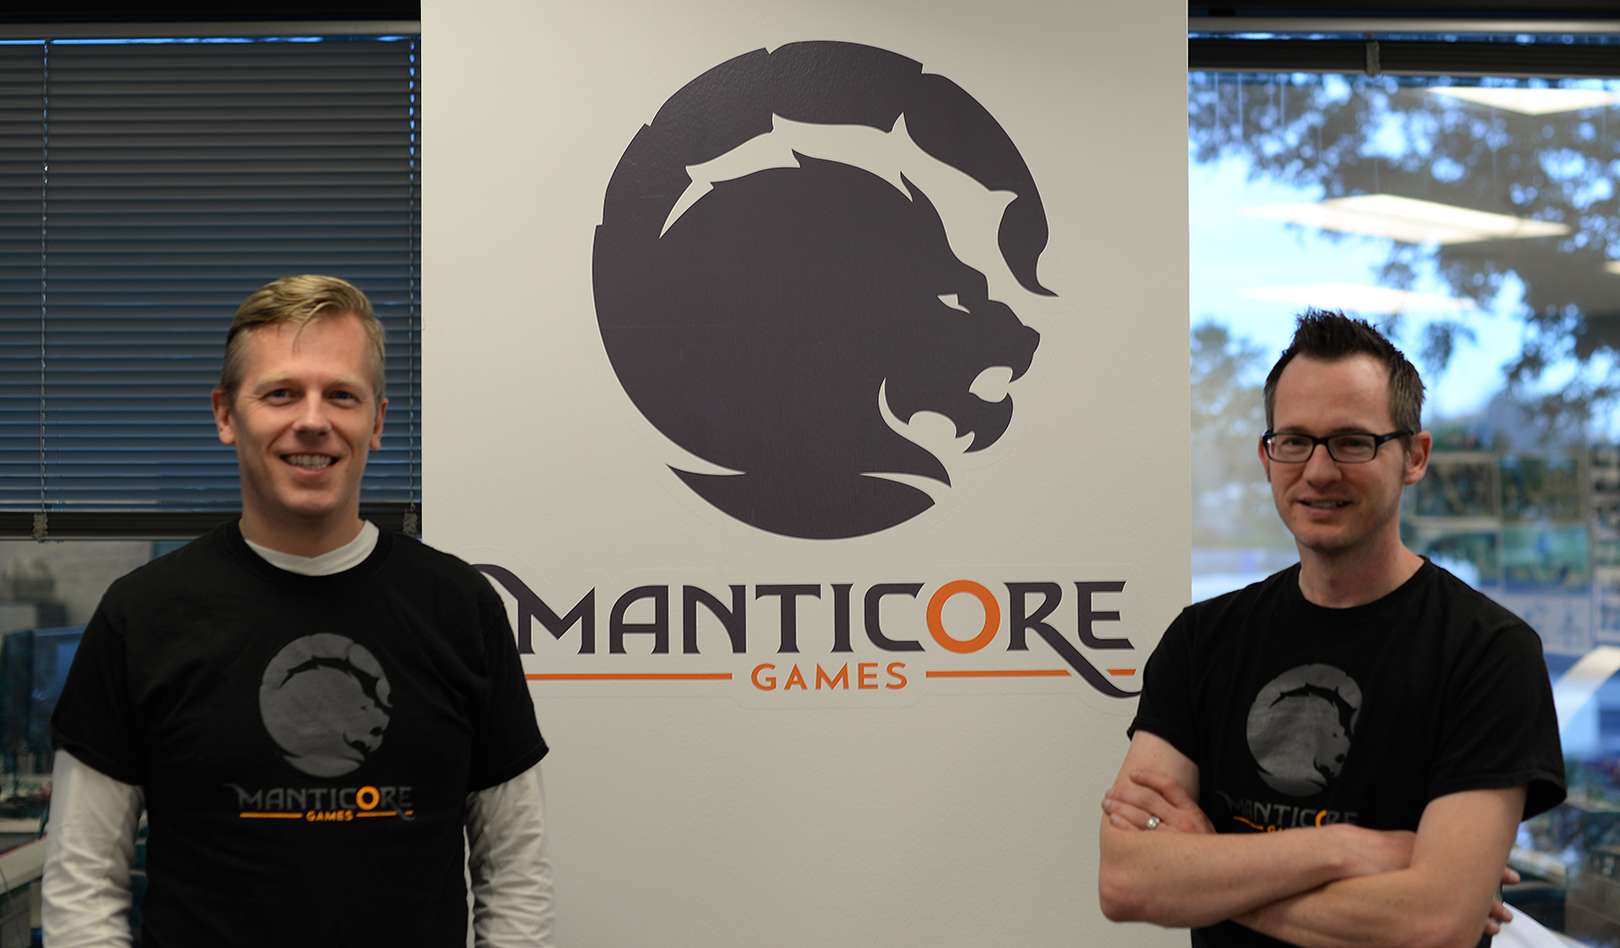 Ex-Zynga execs raise $15 million for their new gaming studio, Manticore Games